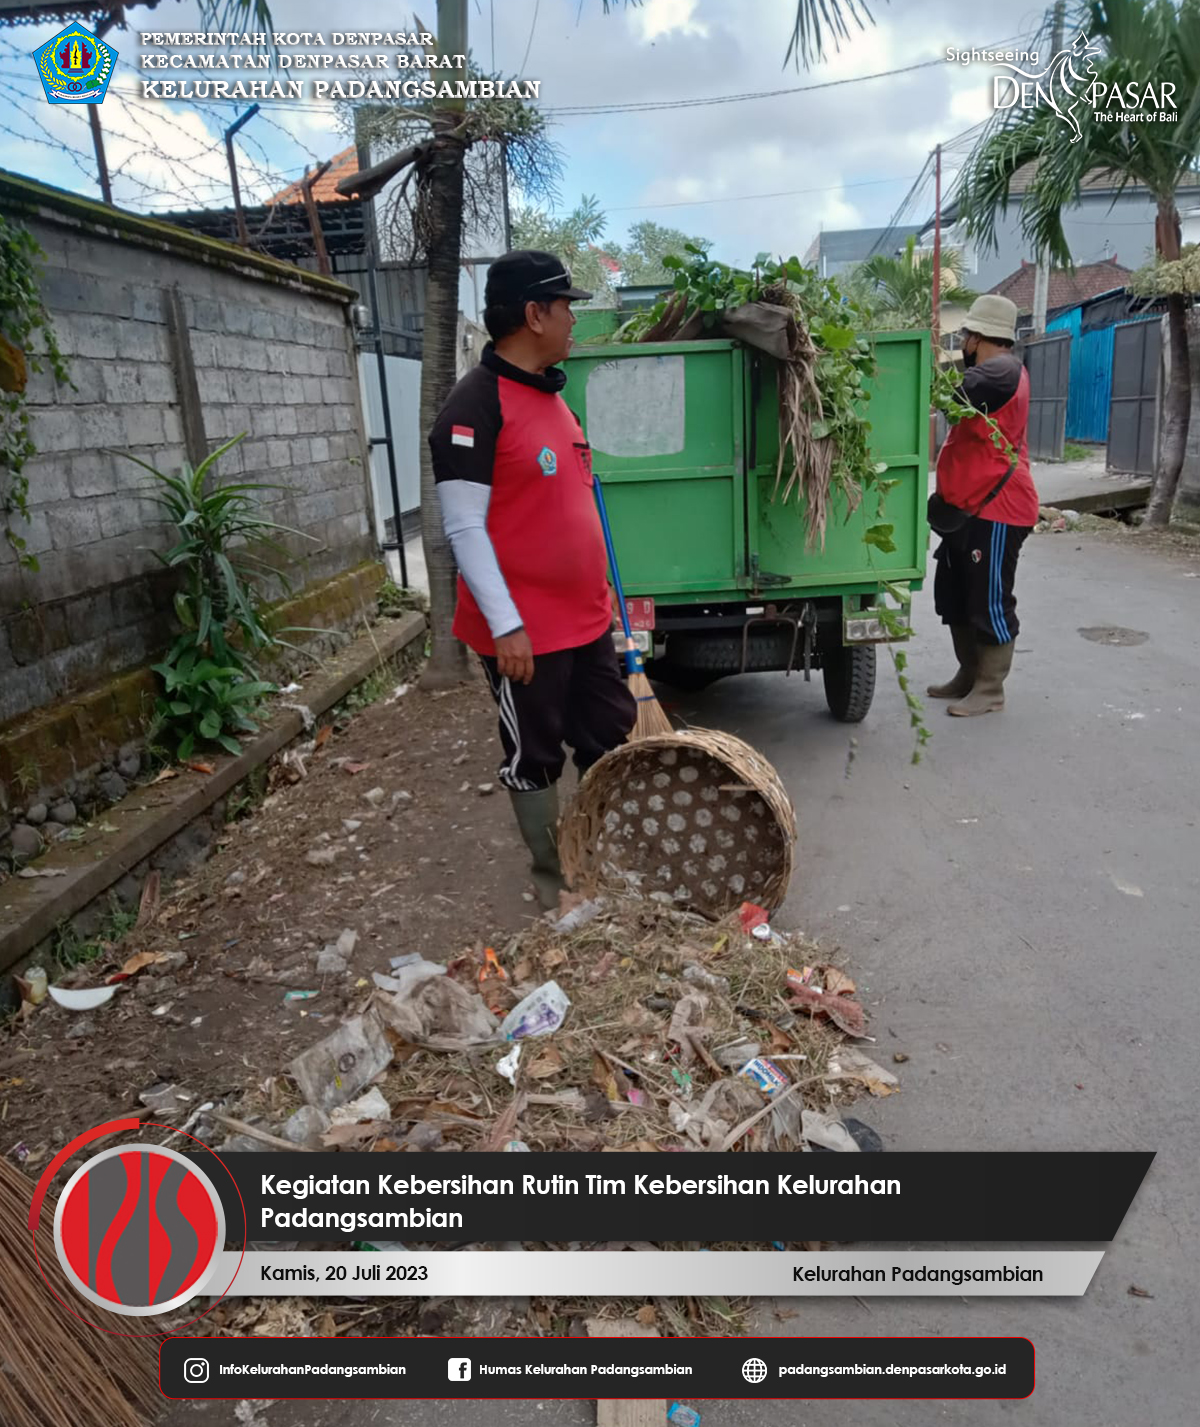 Kegiatan Rutin Kebersihan Tim Kebersihan Kelurahan Padangsambian